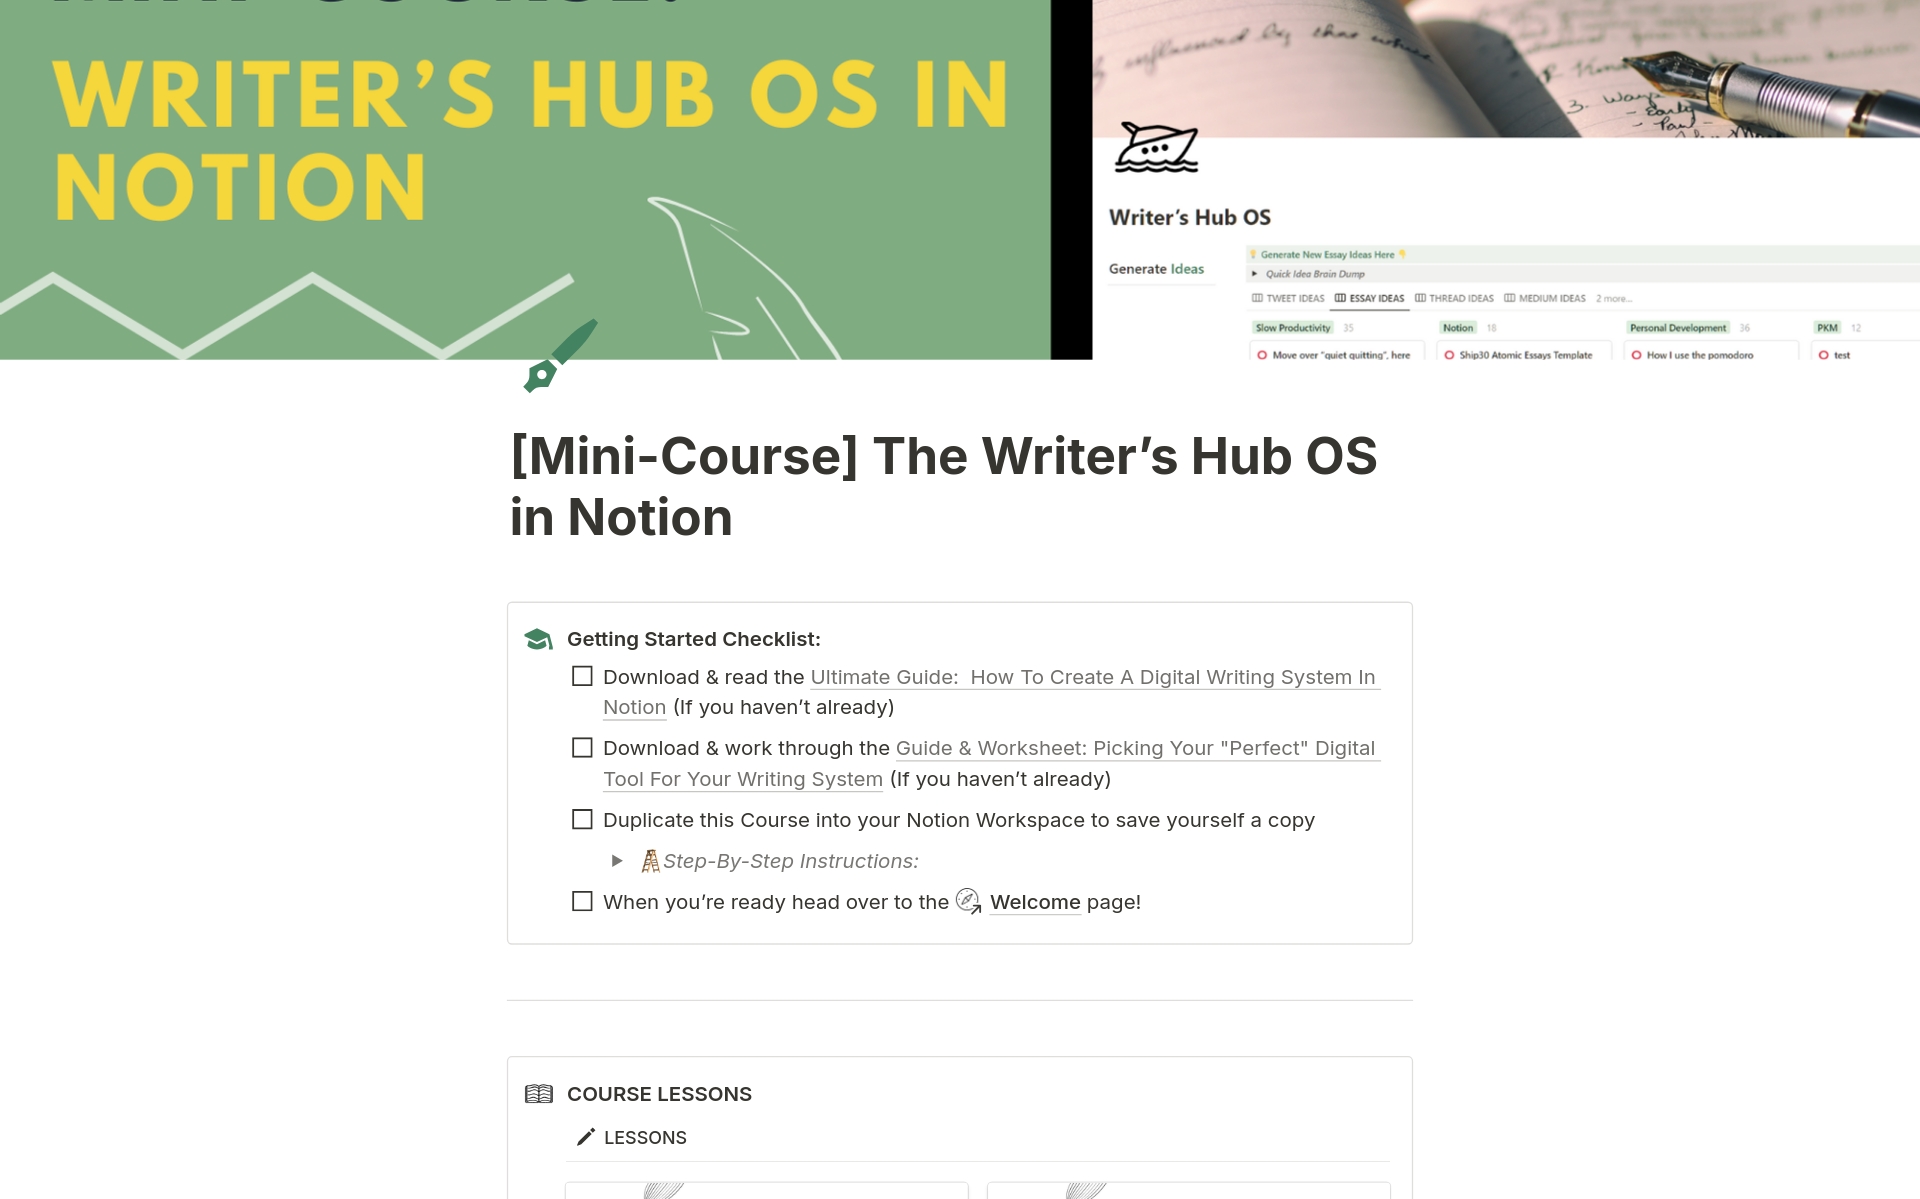 Uma prévia do modelo para Writer’s Hub OS